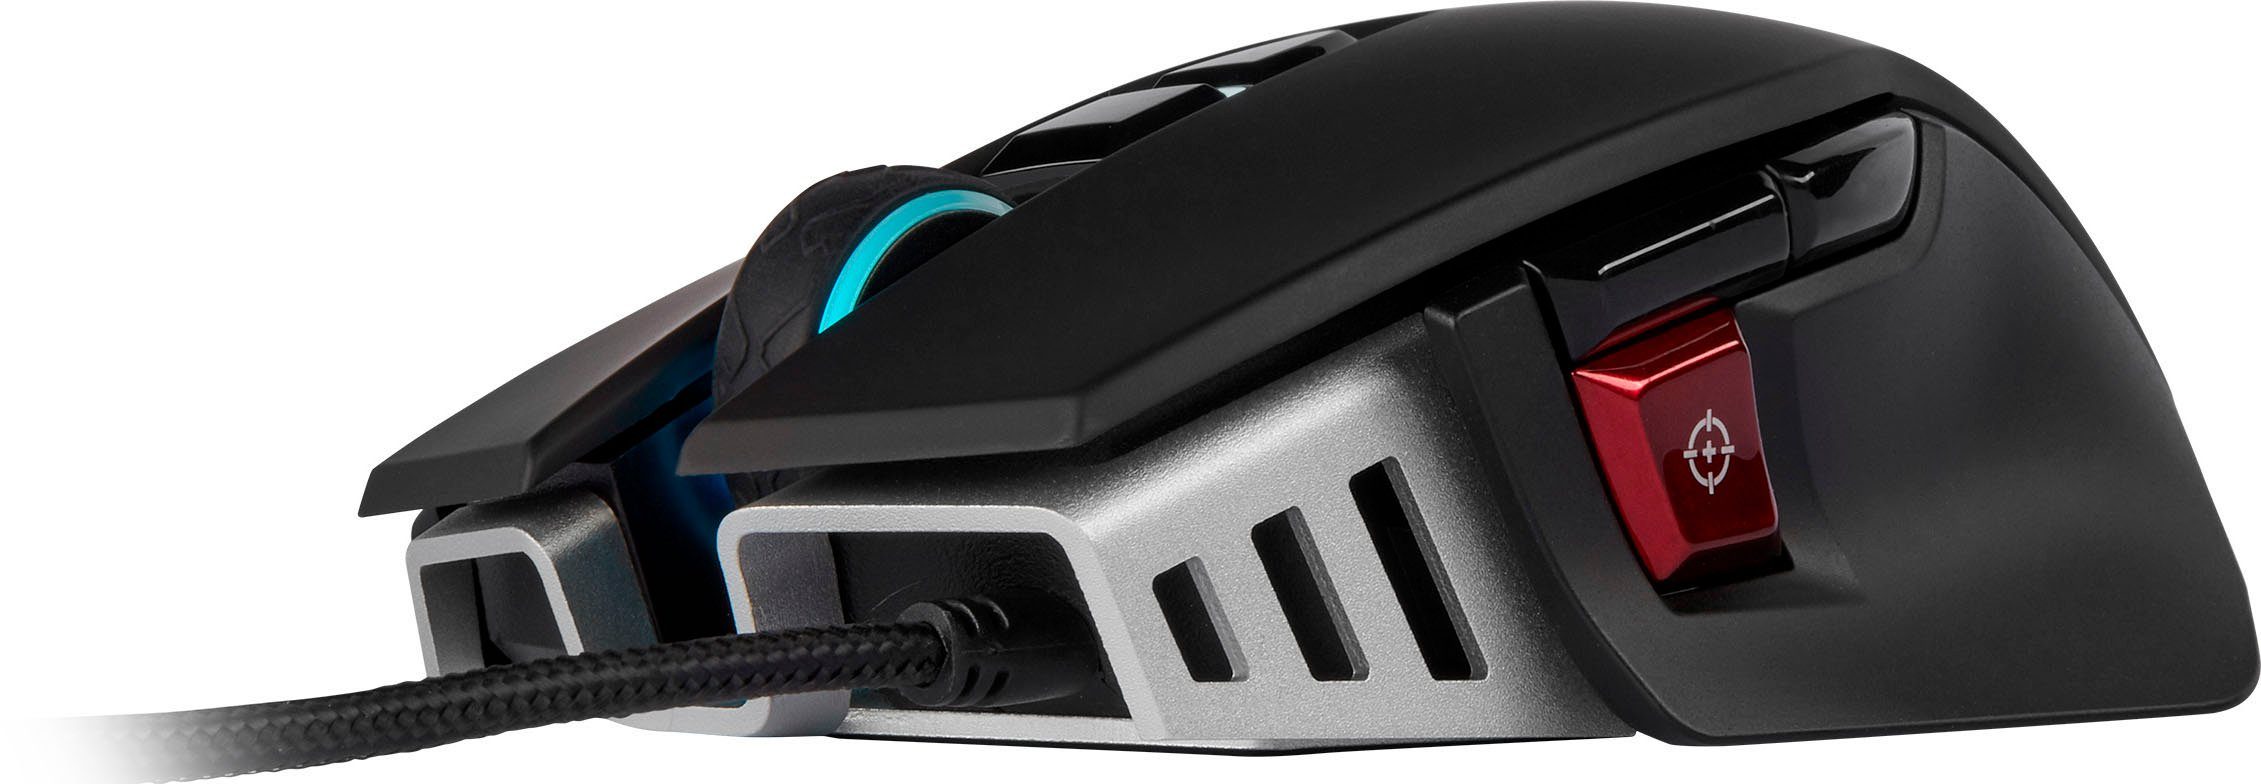 ELITE Mouse RGB Gaming-Maus Gaming (kabelgebunden) M65 Corsair